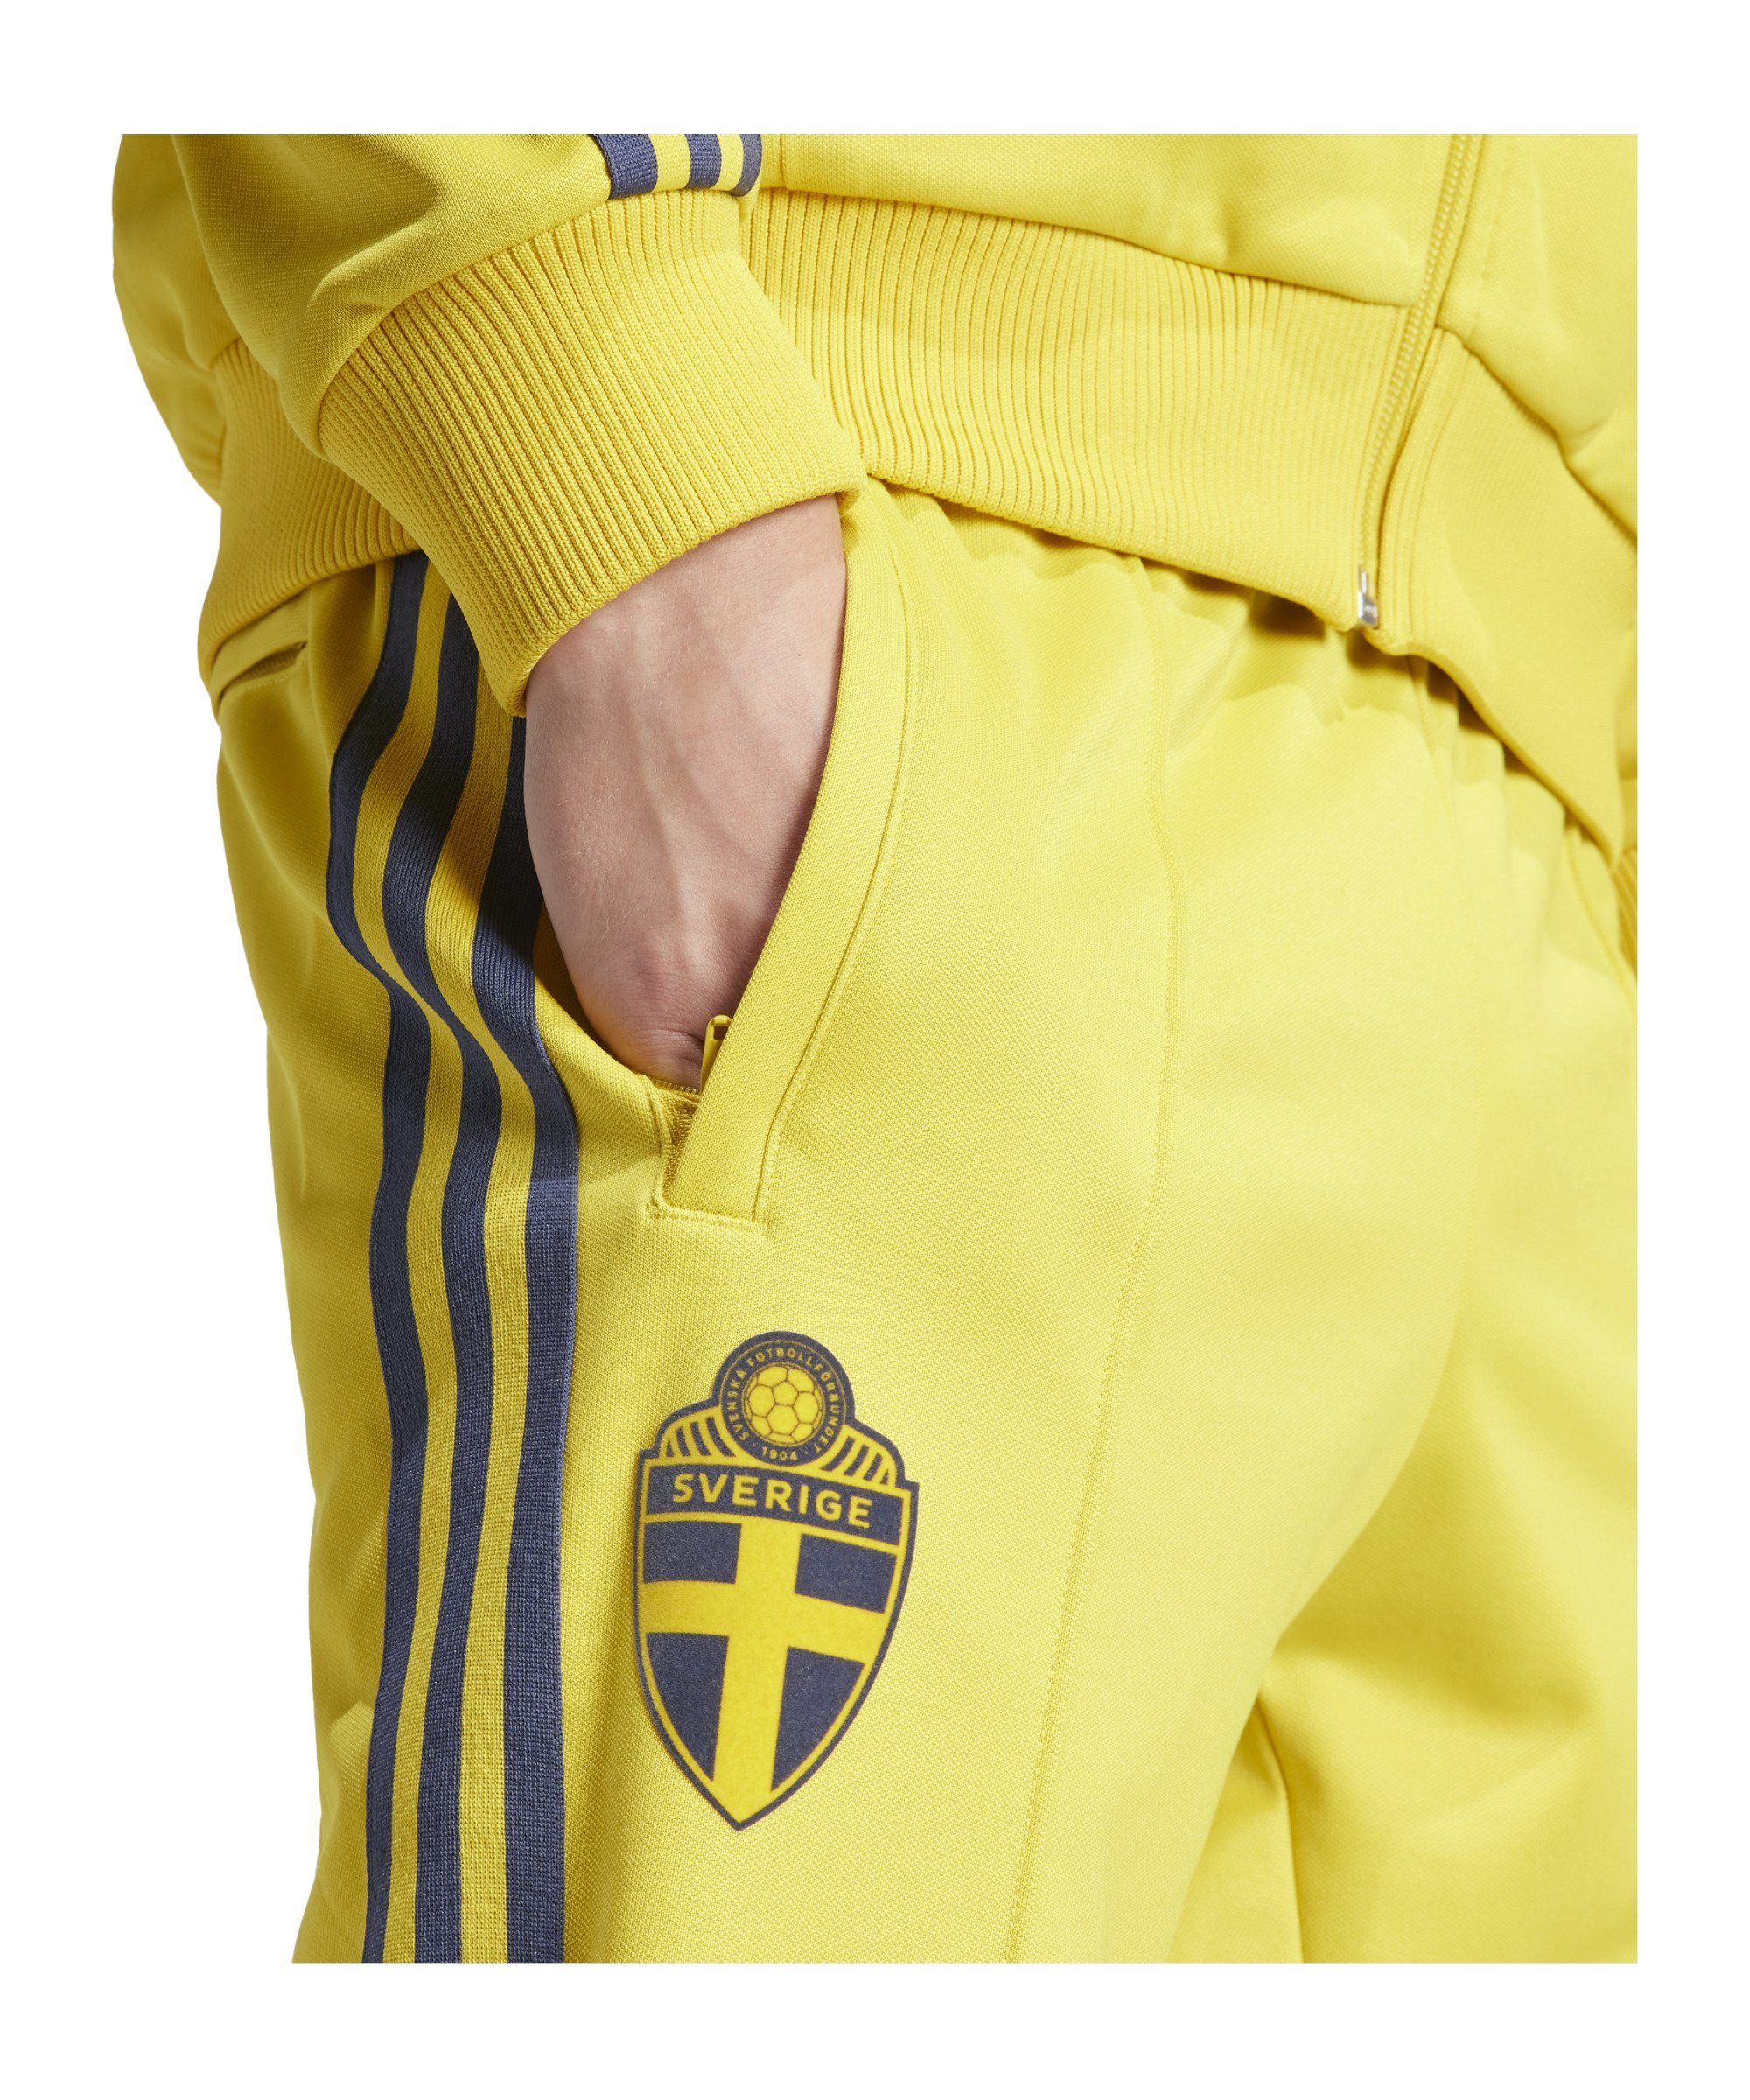 Trainingshose Originals Schweden Sporthose adidas